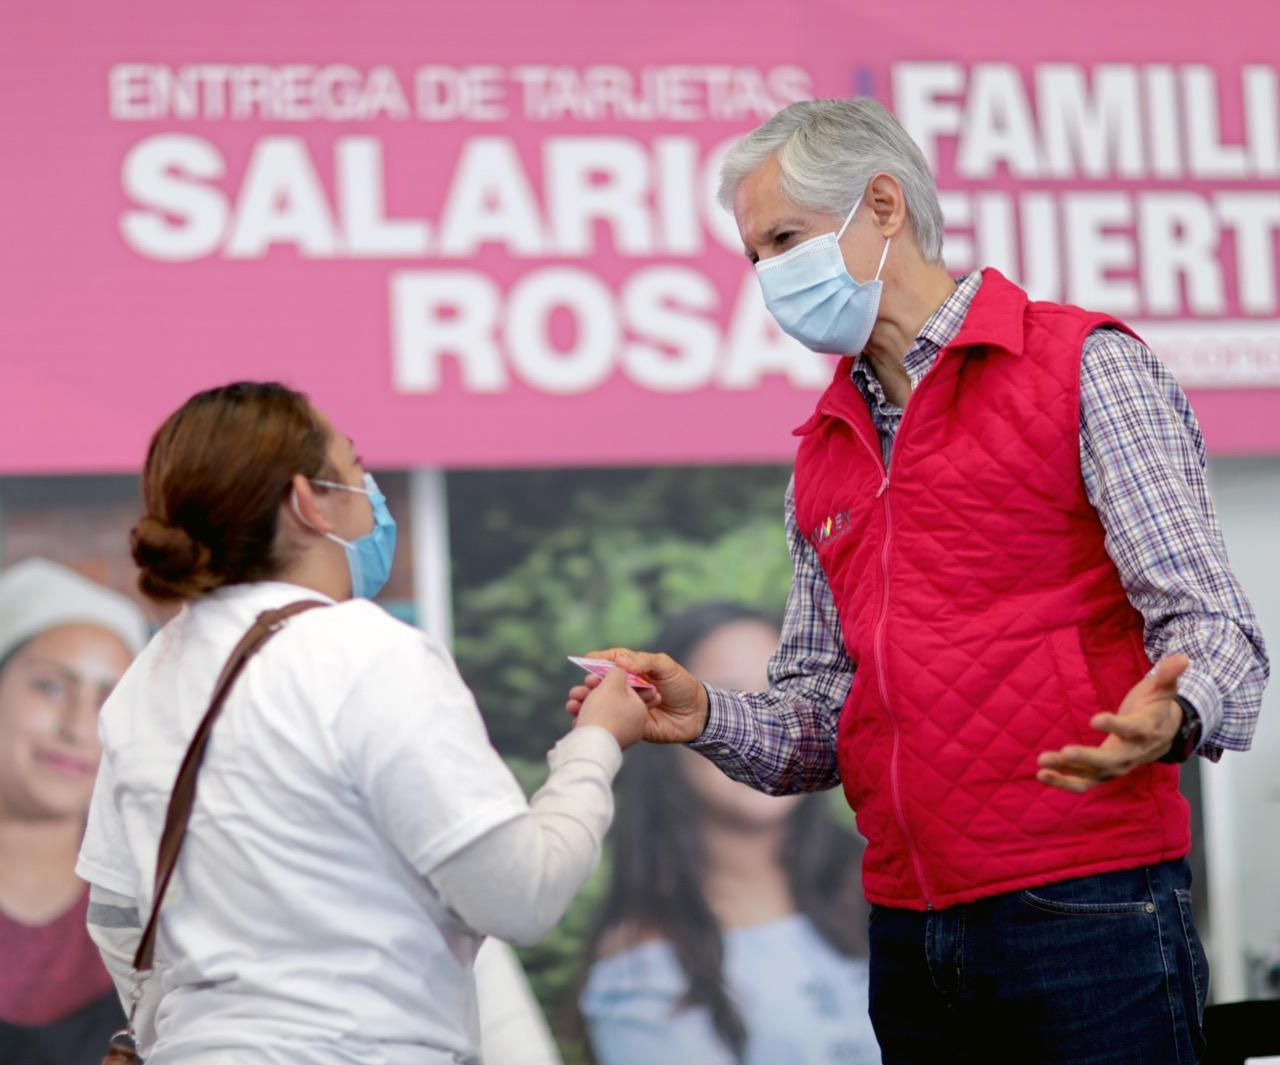 El Salario Rosa no se detiene y beneficia a más de 282 mil amas de casa: Alfredo del Mazo